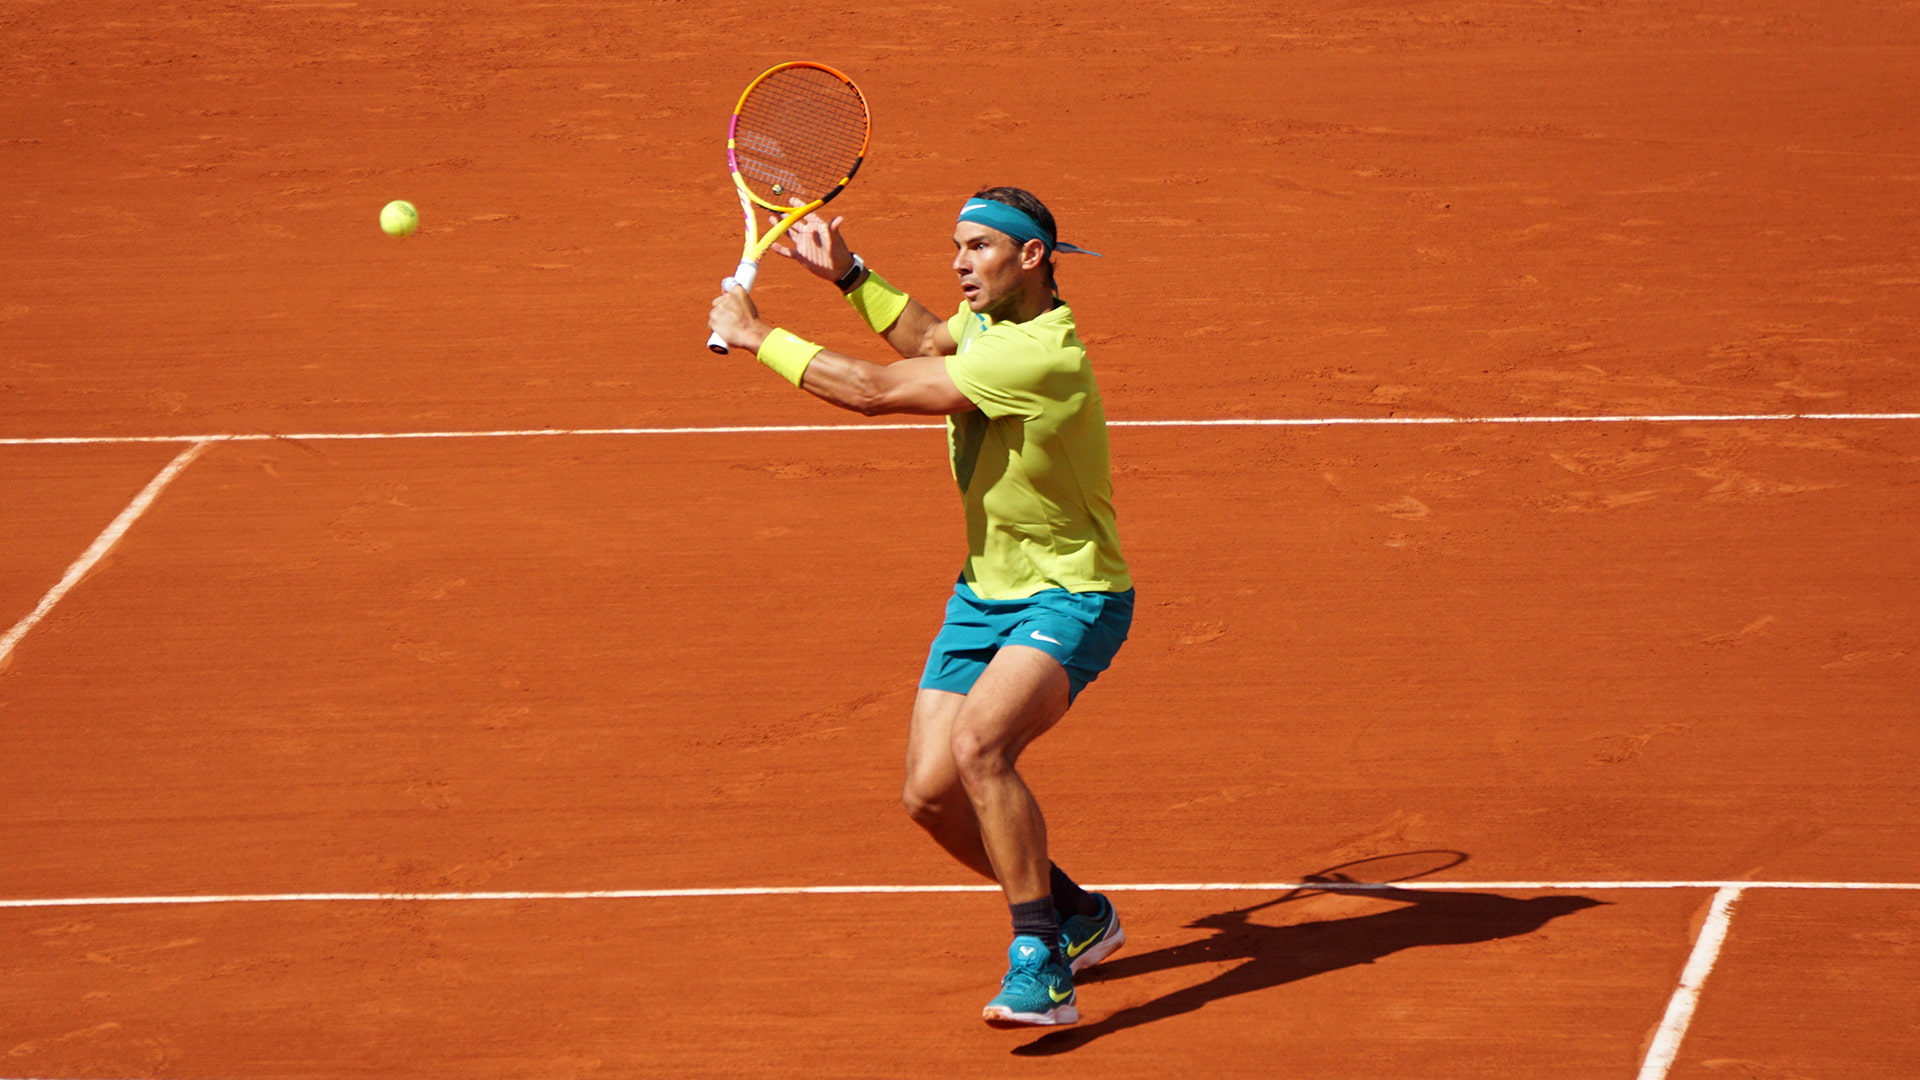 Rafael Nadal volleys at Roland Garros